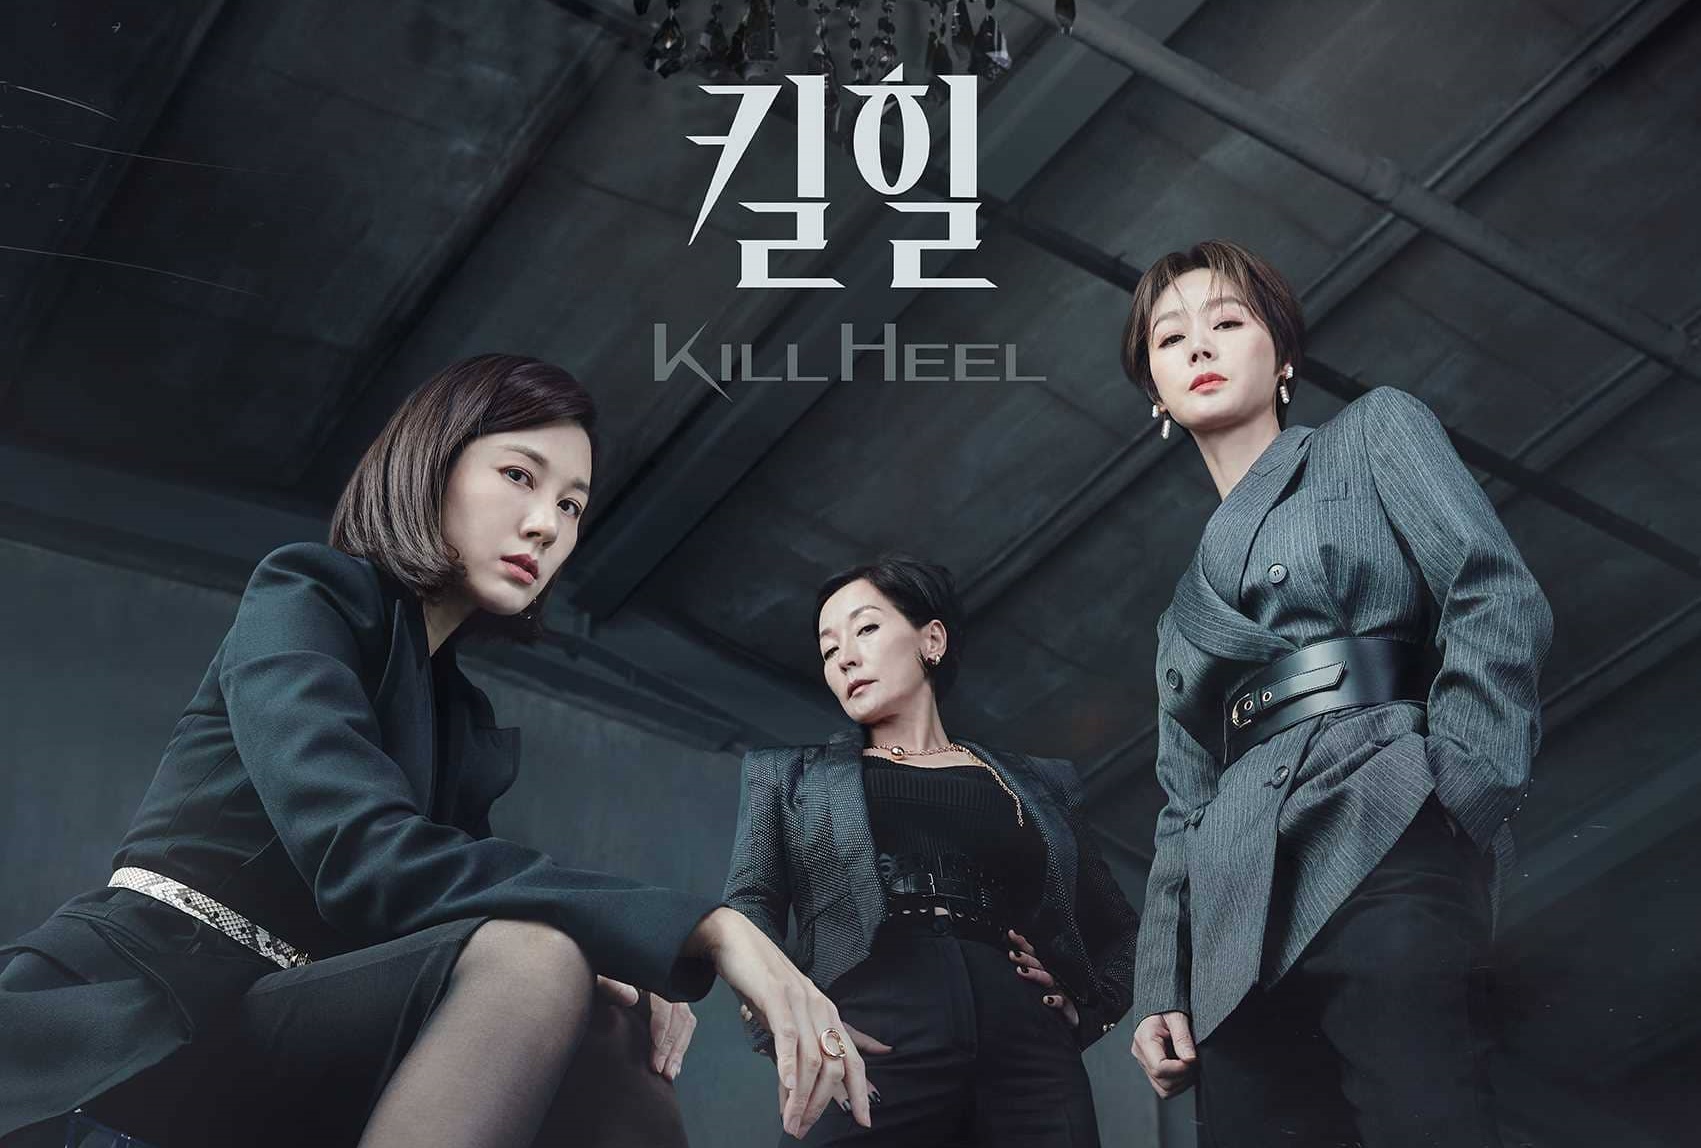 ดูซีรี่ย์เกาหลี Kill Heel ซับไทย